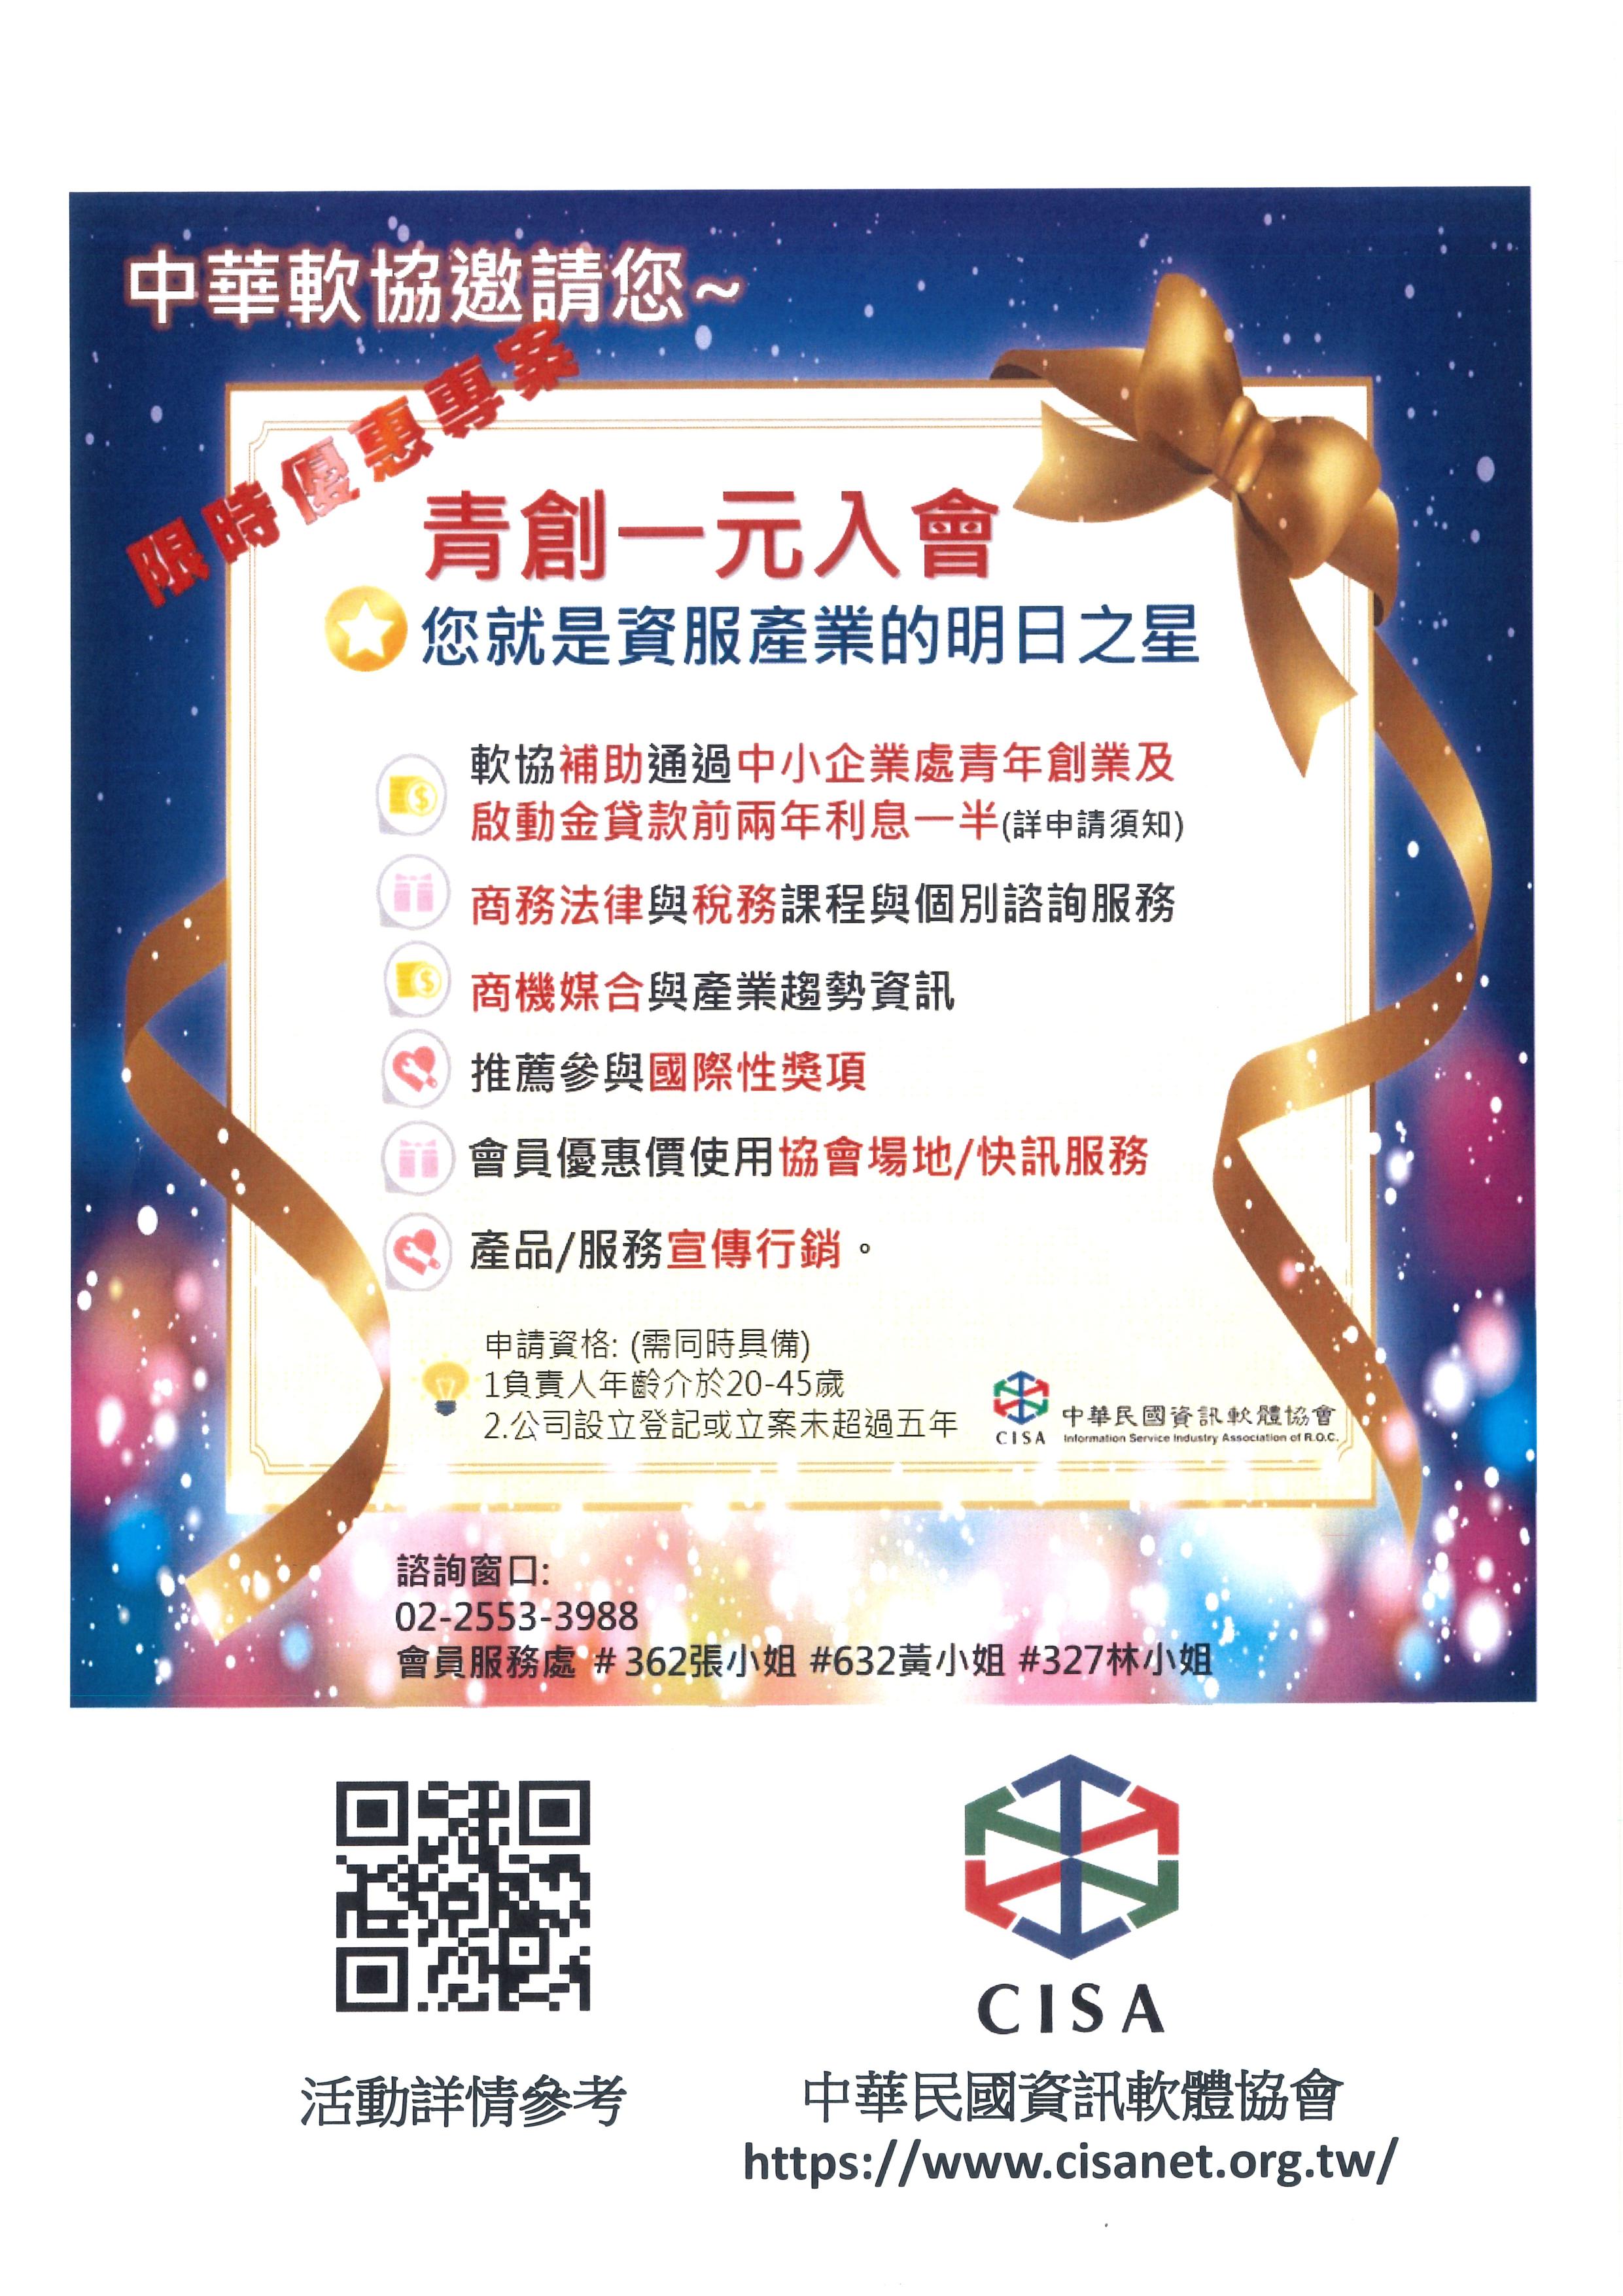 明日之星申請須知中華民國資訊軟體協會